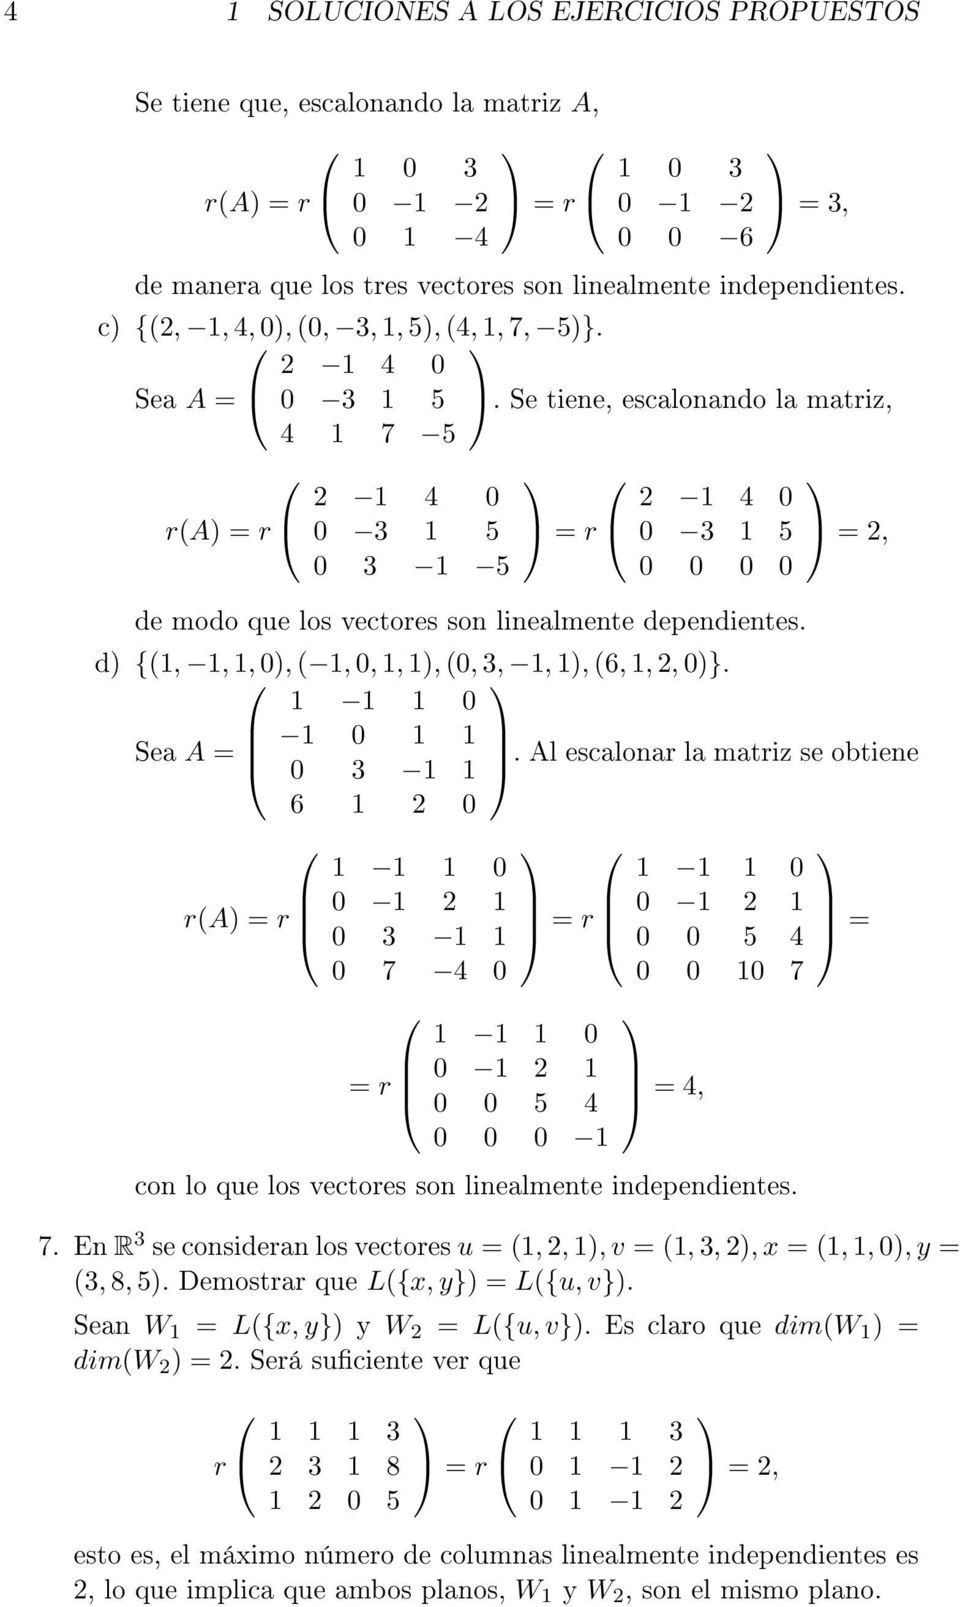 Se tiene, escalonando la matriz, 4 1 7 5 r(a) = r 2 1 4 0 0 3 1 5 0 3 1 5 = r 2 1 4 0 0 3 1 5 0 0 0 0 = 2, de modo que los vectores son linealmente dependientes.